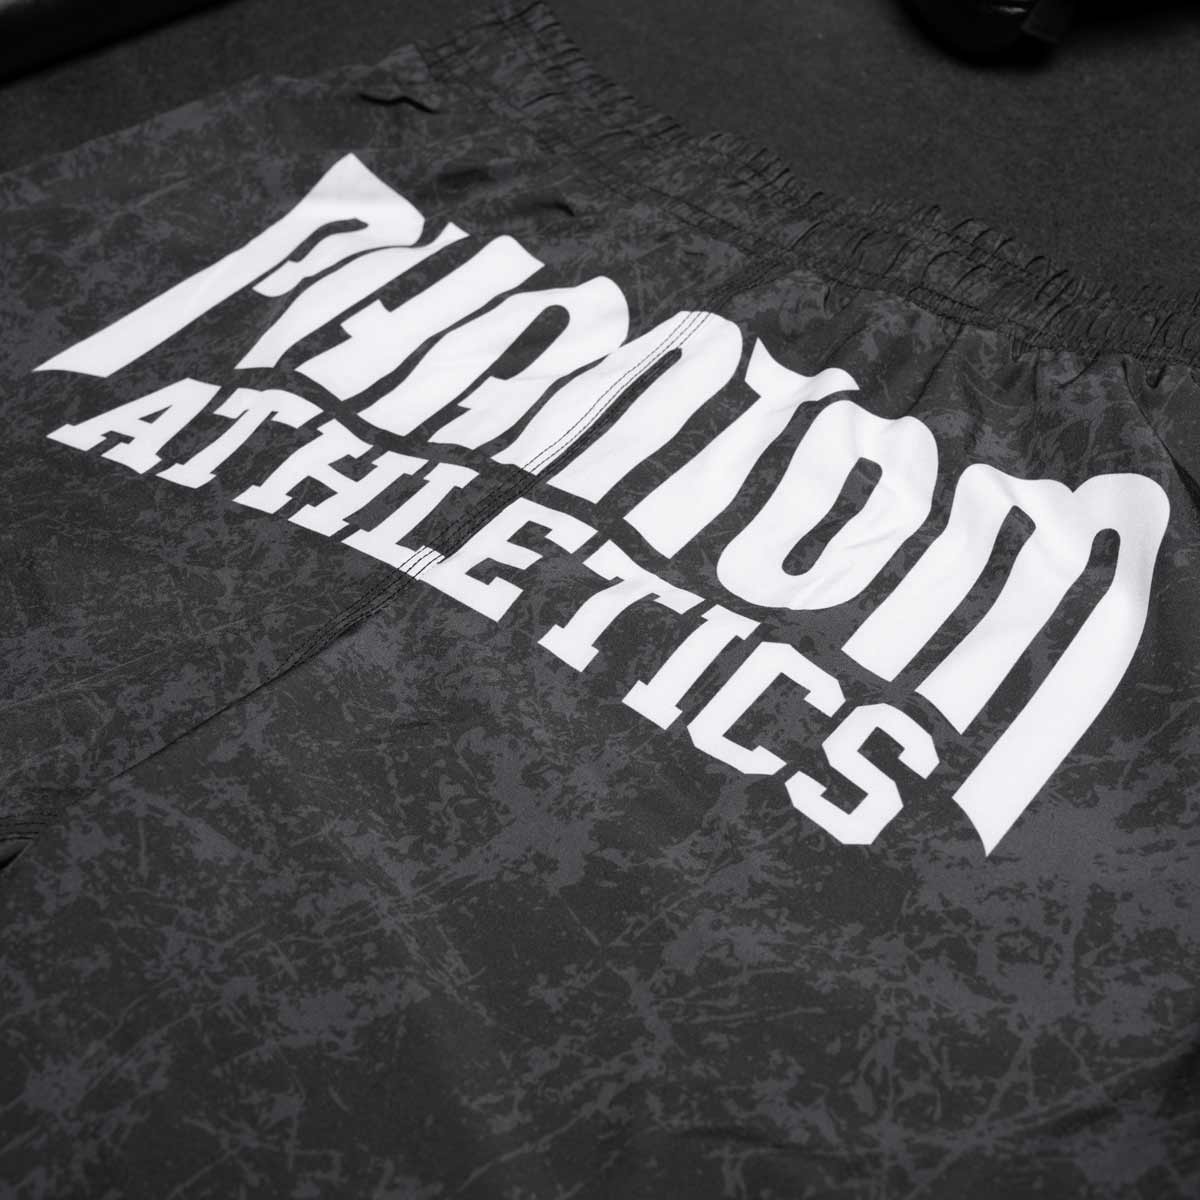 Die Phantom Serious MMA Shorts im Smiley Design für deinen Kampfsport. Mit hochwertigem Sublimationsdruck in Top Qualität für lange Haltbarkeit beim Training und Sparring.